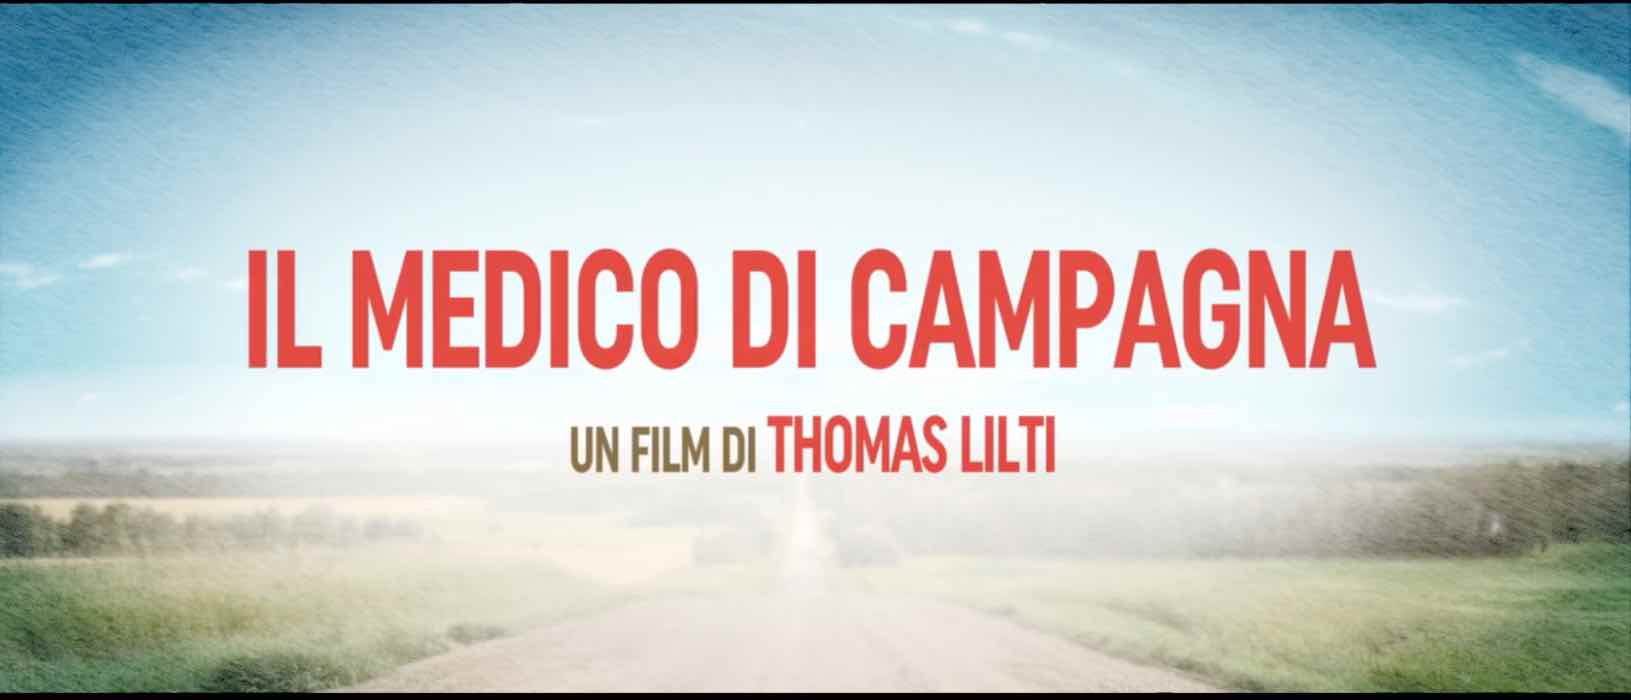 Rai Movie, 'Il medico di campagna': info, trama, cast e curiosità sul film 